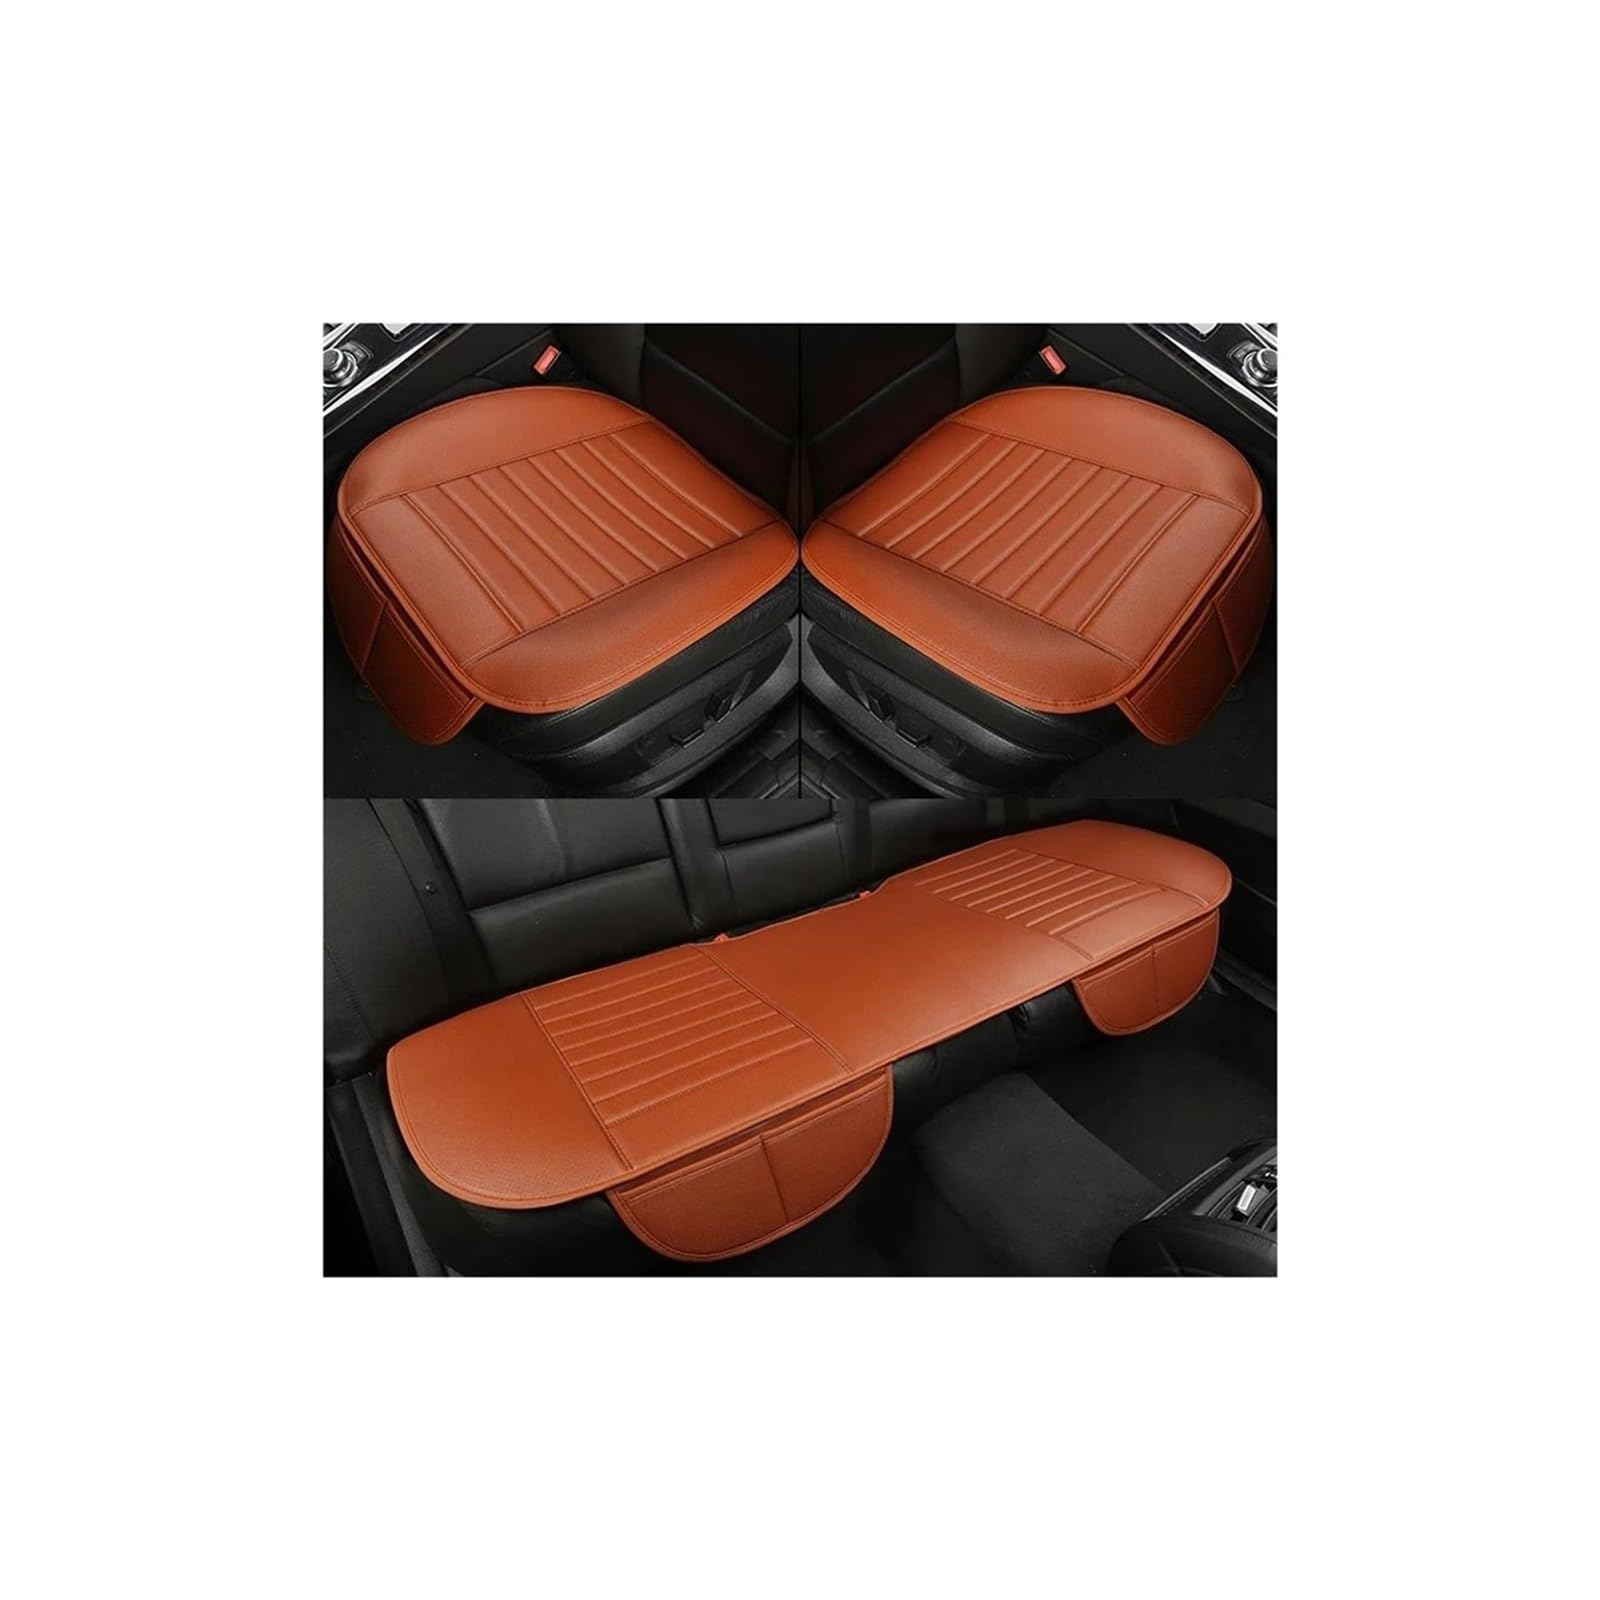 YIJIAVSX Auto-Sitzbezüge Car-Styling Autozubehör Sitzkissen Für Kia Für Rio Für Sportage Für Cerato K2 K3 K4 K5 Für Karneval Rücksitzbezüge(4) von YIJIAVSX